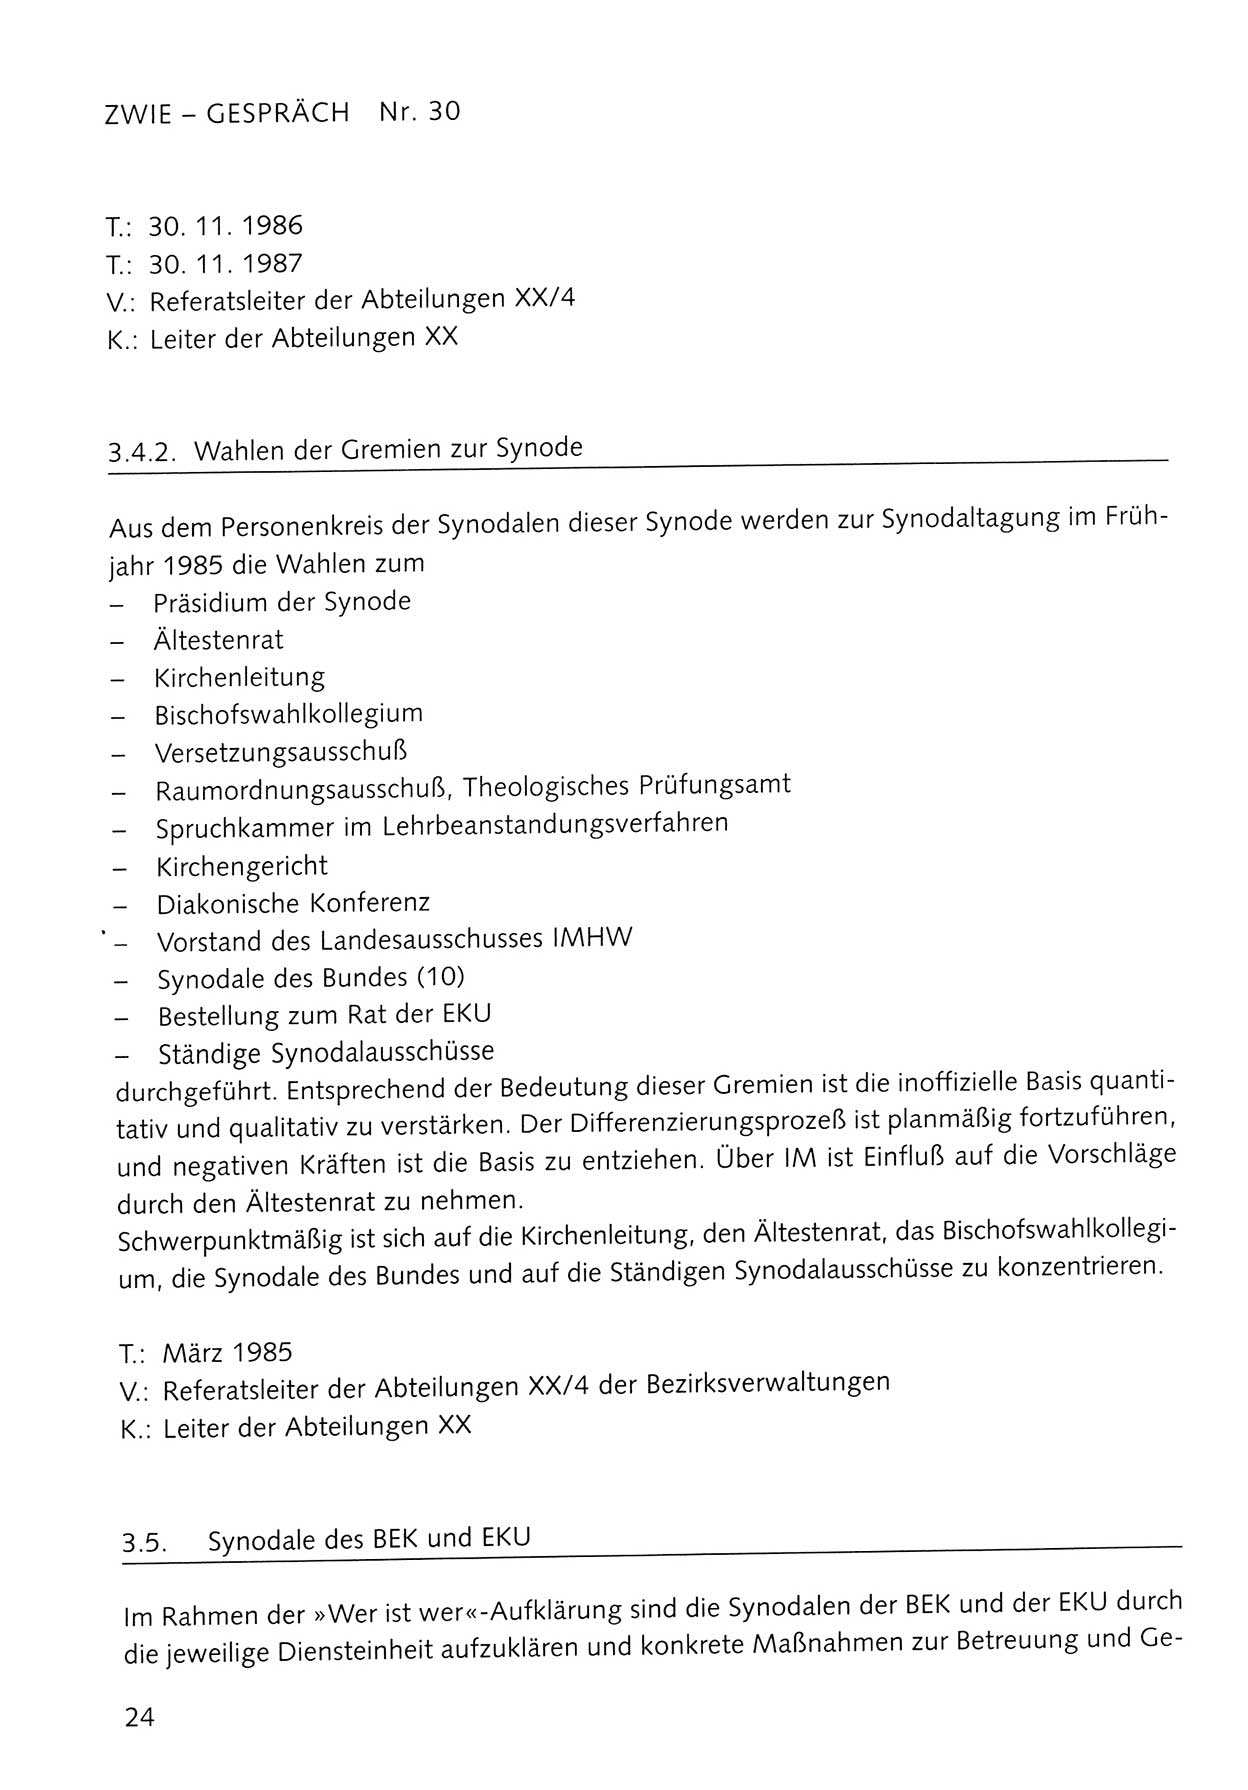 Zwie-Gespräch, Beiträge zum Umgang mit der Staatssicherheits-Vergangenheit [Deutsche Demokratische Republik (DDR)], Ausgabe Nr. 30, Berlin 1995, Seite 24 (Zwie-Gespr. Ausg. 30 1995, S. 24)